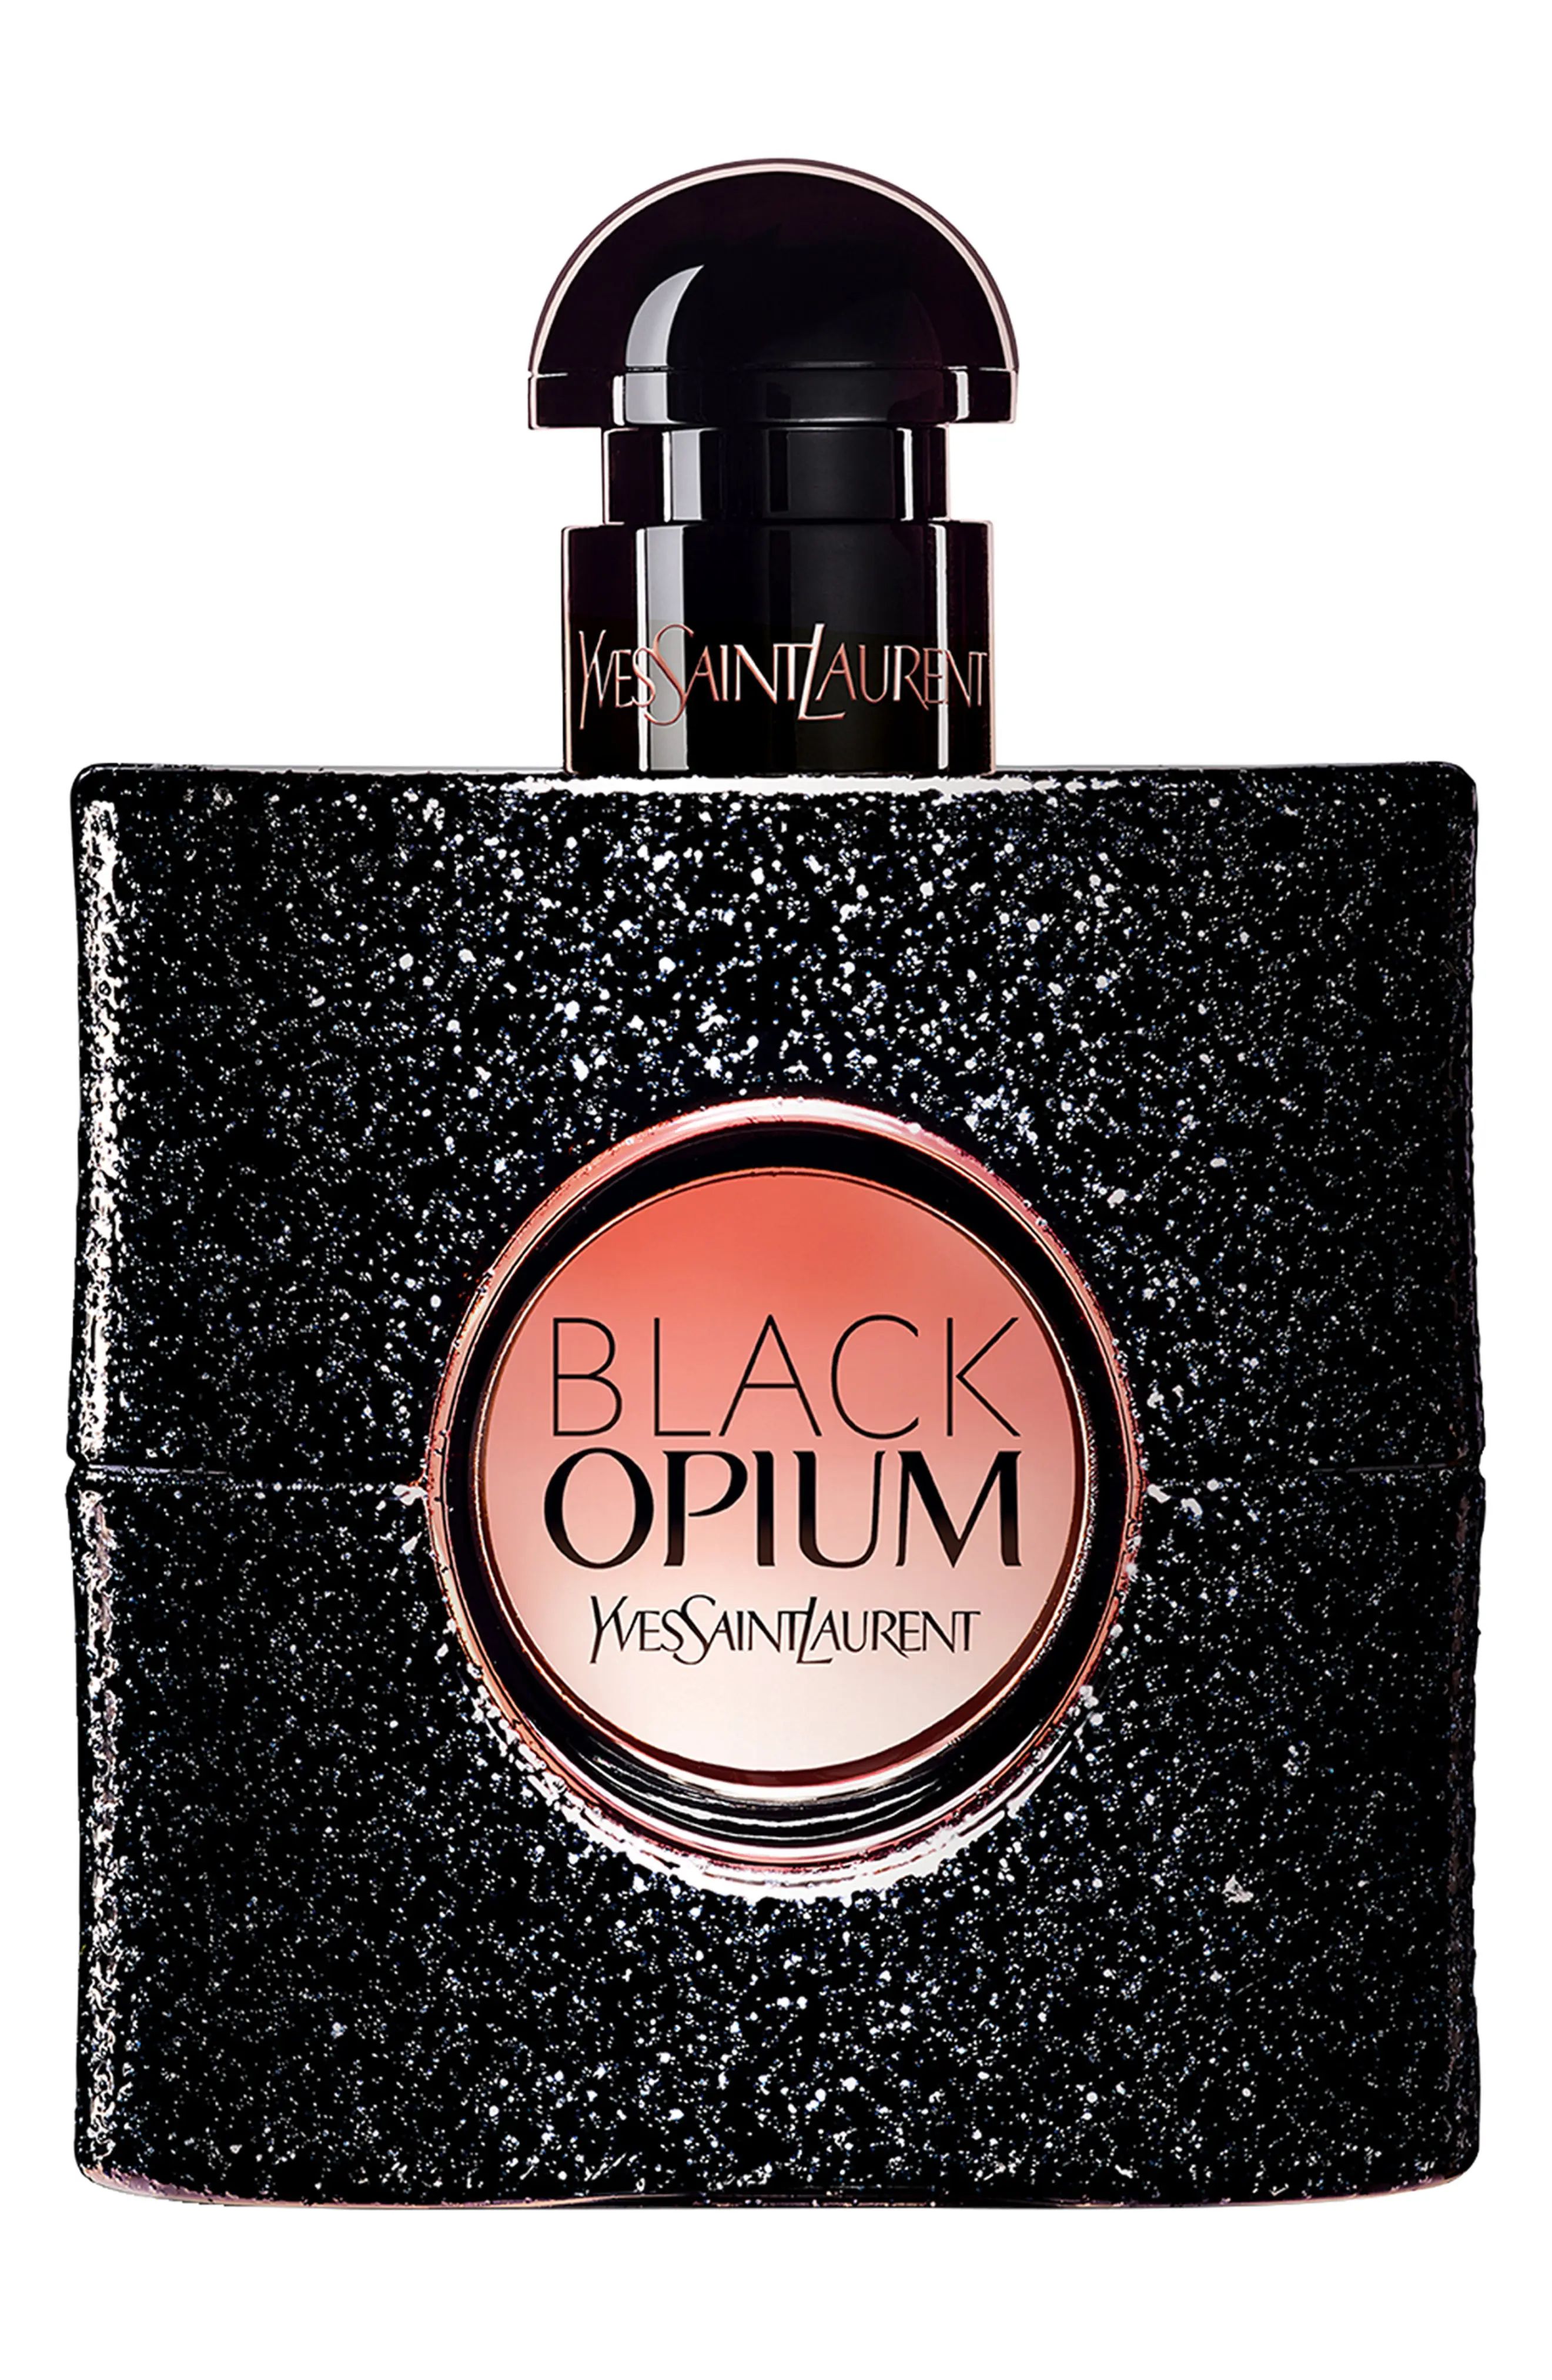 Yves Saint Laurent Black Opium Eau de Parfum, Size 3 Oz at Nordstrom | Nordstrom